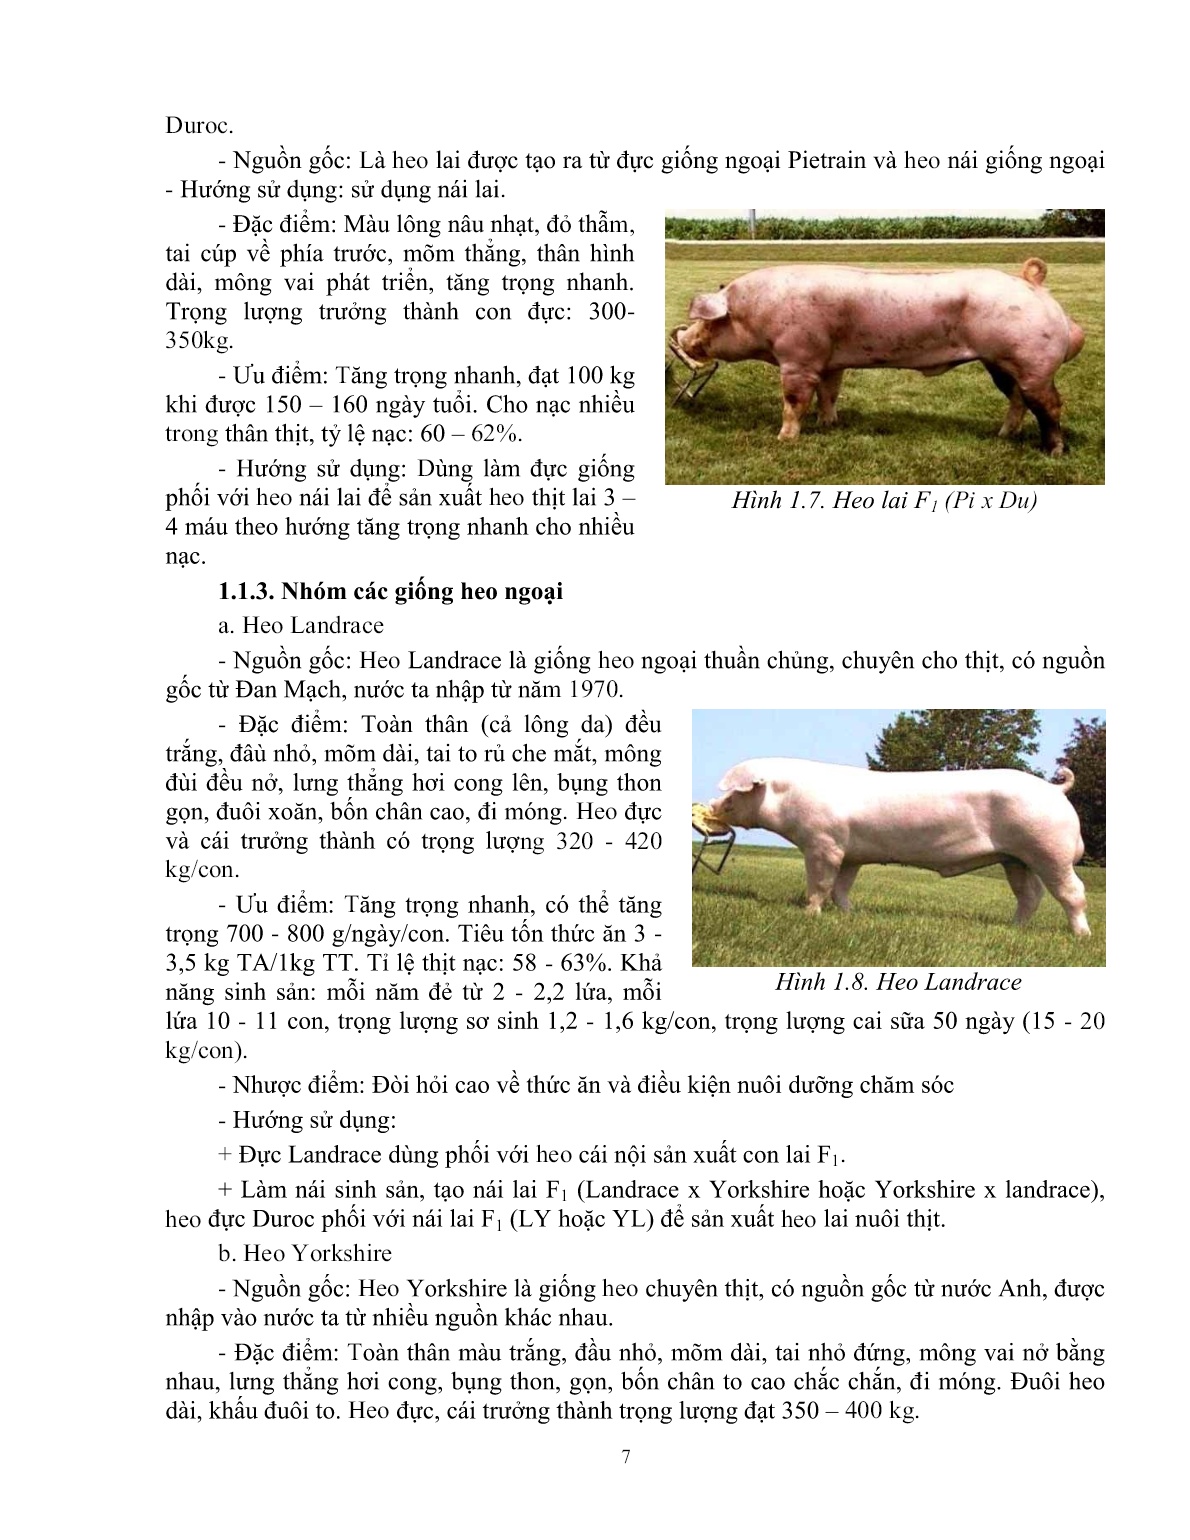 Giáo trình mô đun Chăn nuôi heo đực giống (Trình độ: Đào tạo dưới 3 tháng) trang 8